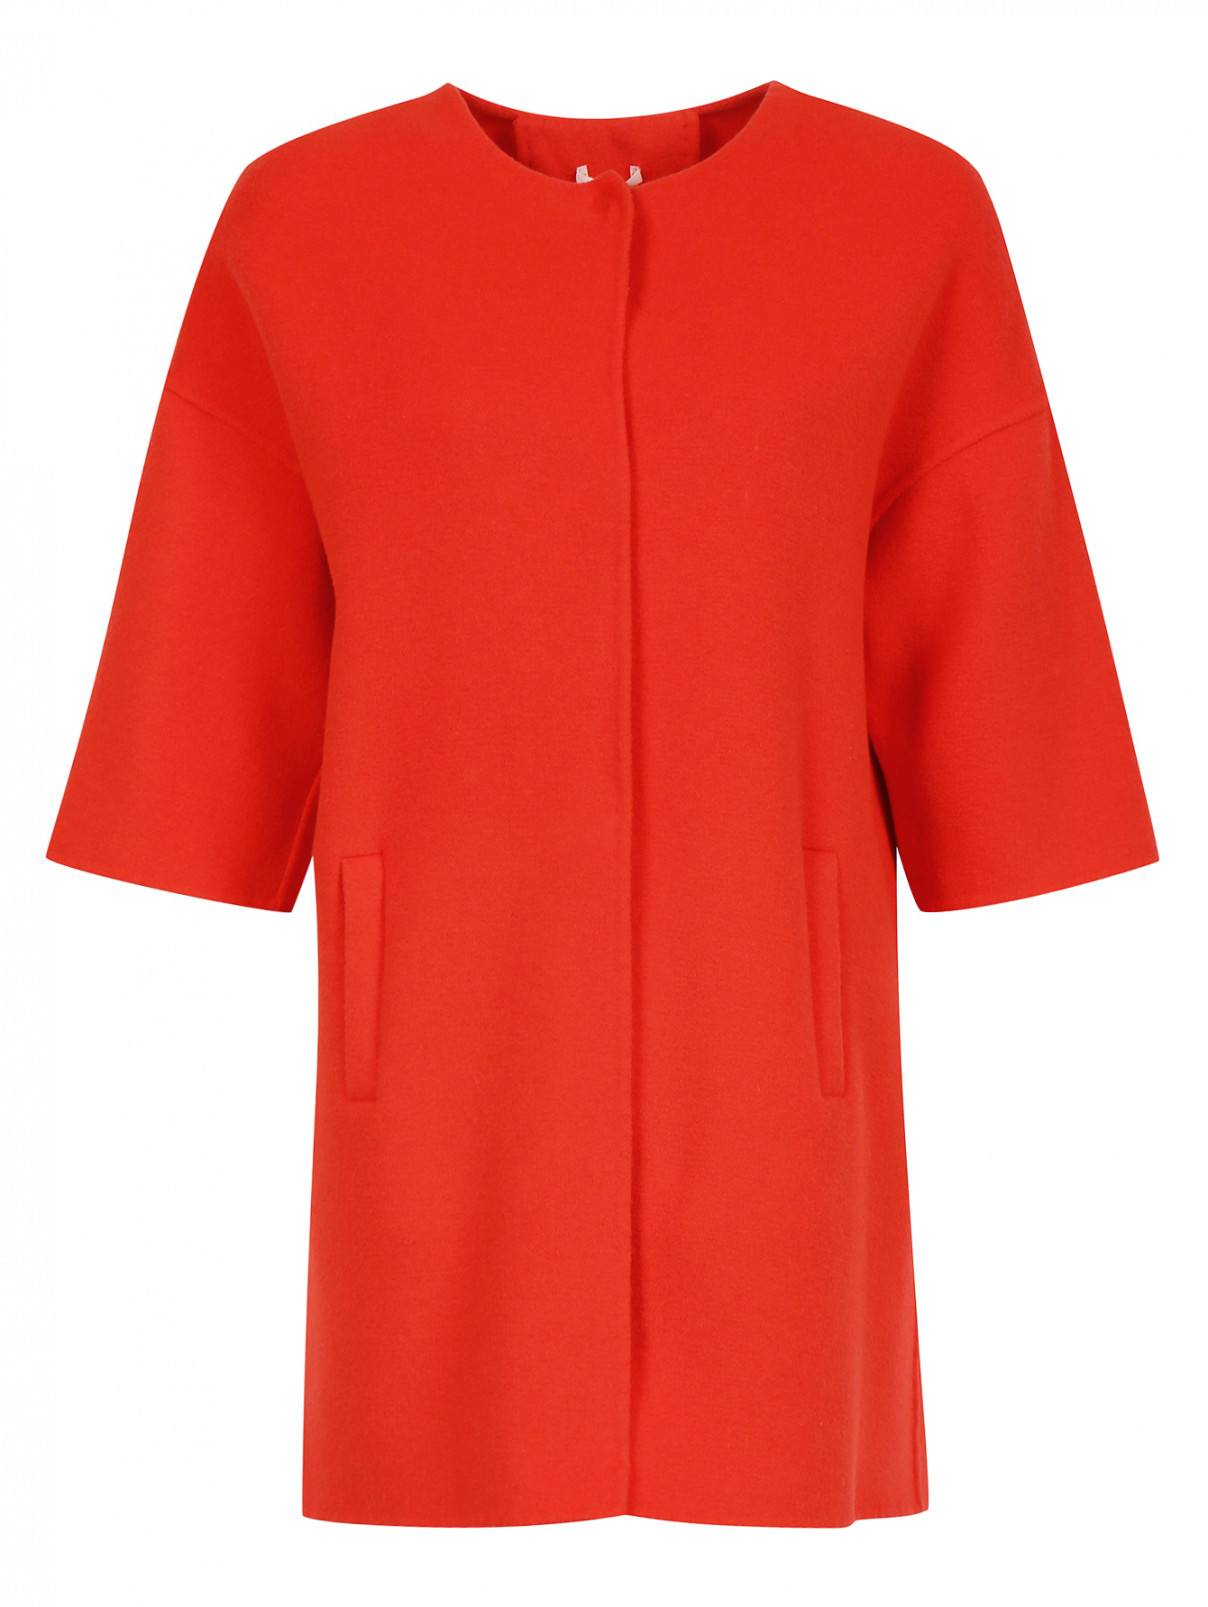 Пальто из шерсти и кашемира с рукавами 3/4 P.A.R.O.S.H.  –  Общий вид  – Цвет:  Красный